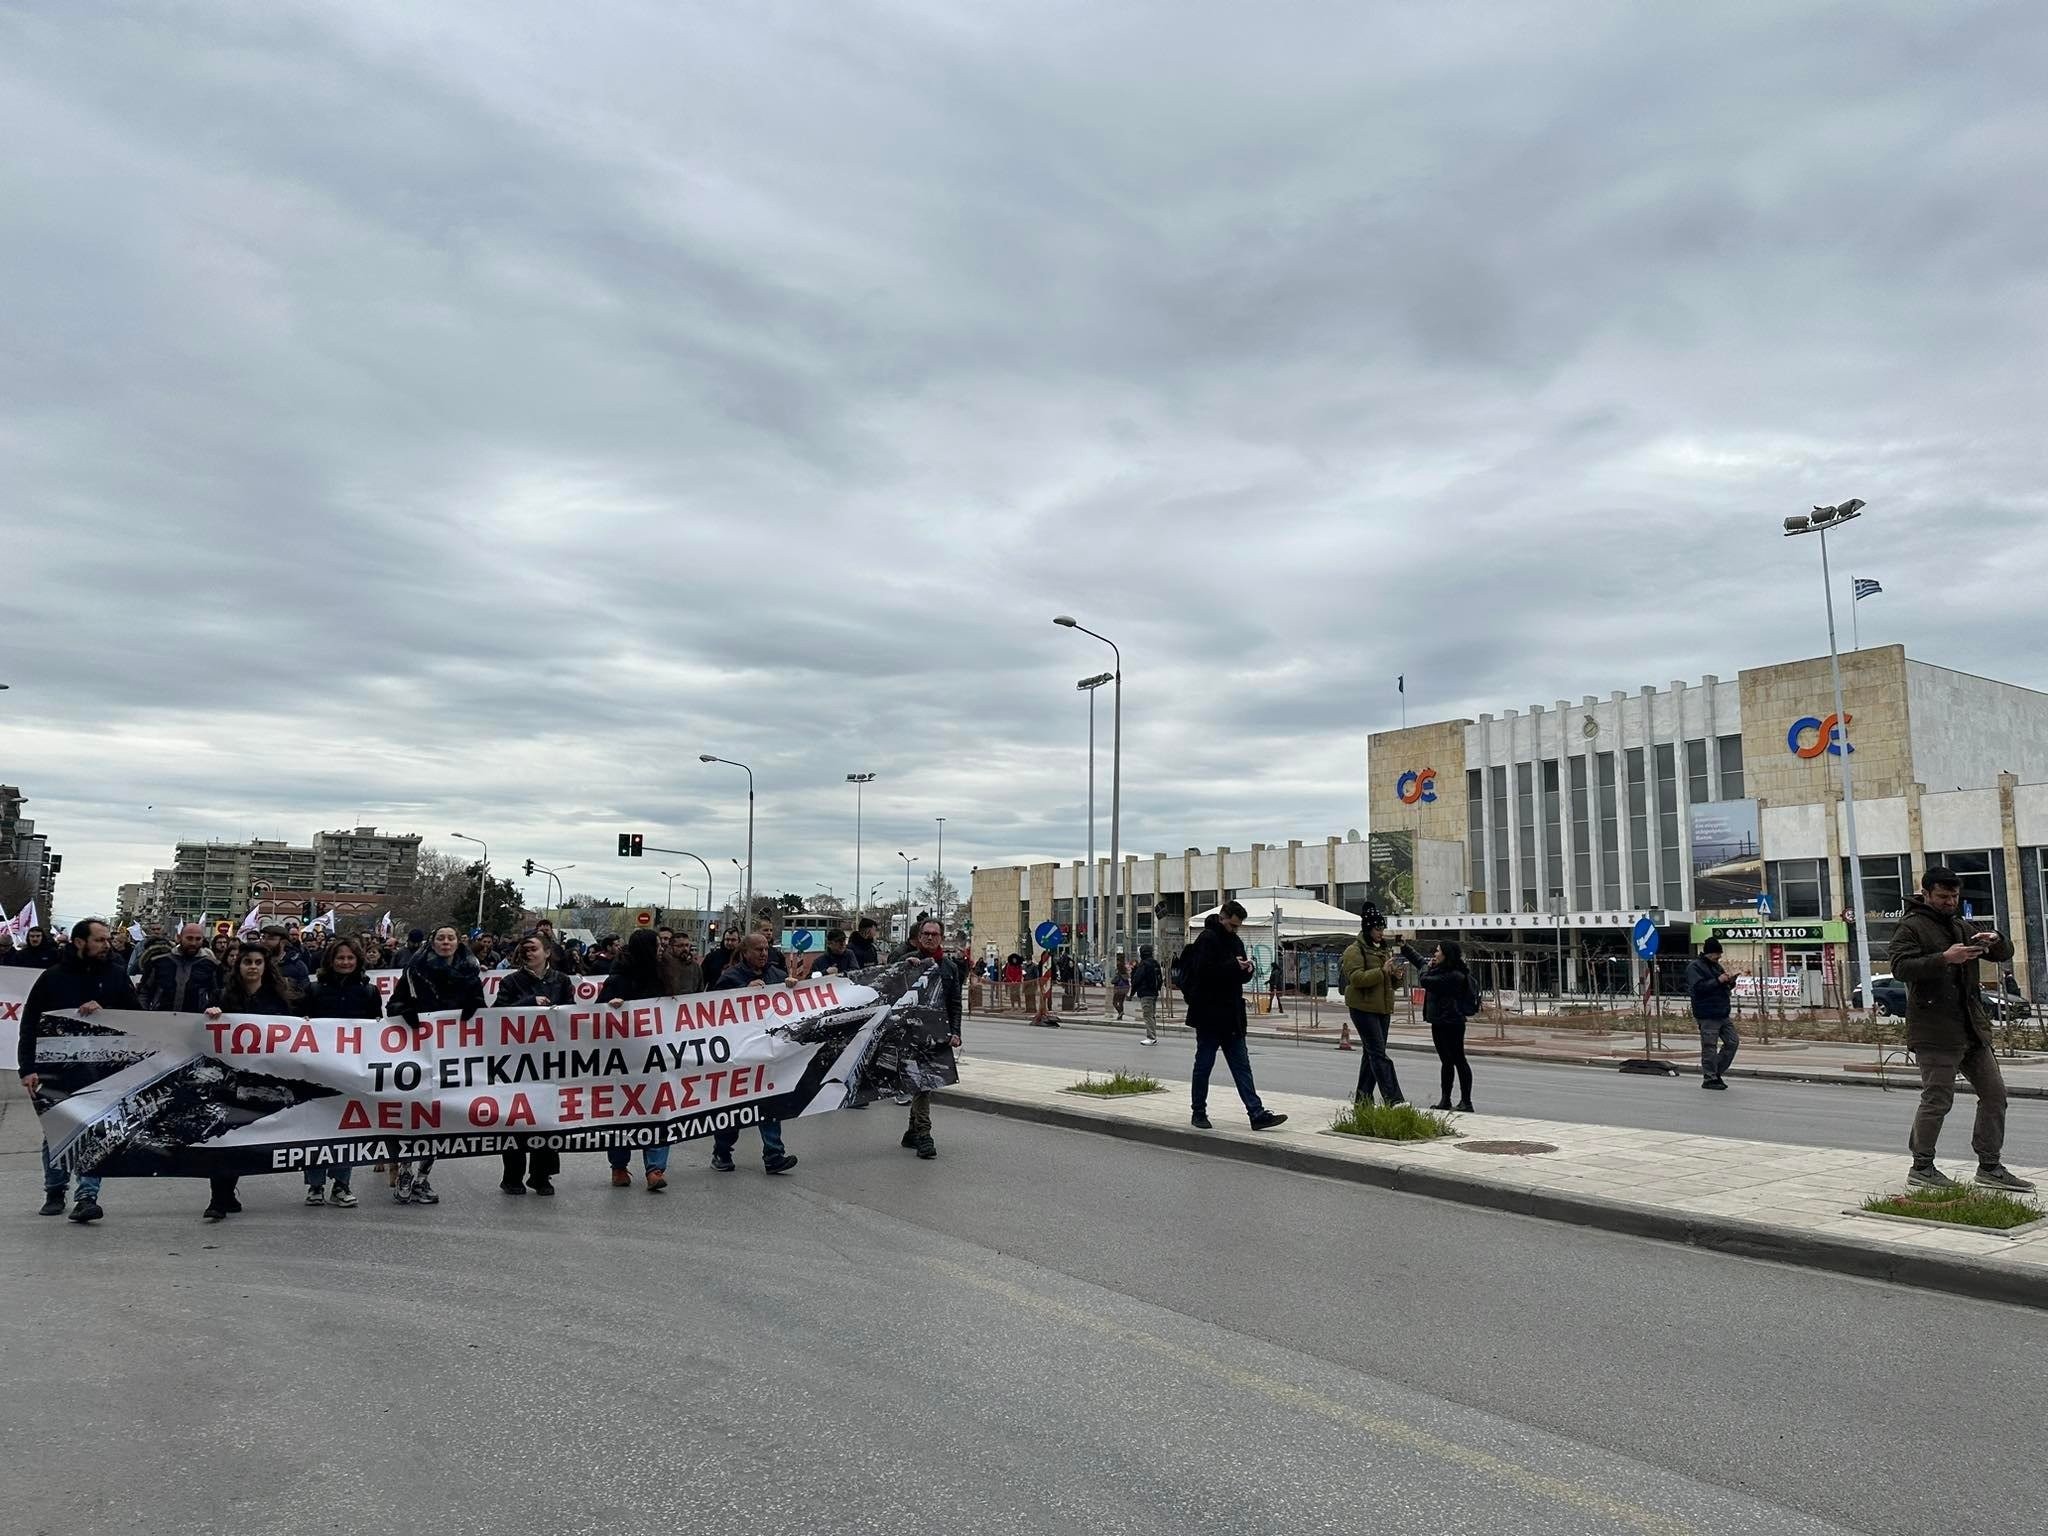 Θεσσαλονίκη: Αναστάτωση αναμένεται σήμερα στο κέντρο από τις πολλαπλές συγκεντρώσεις